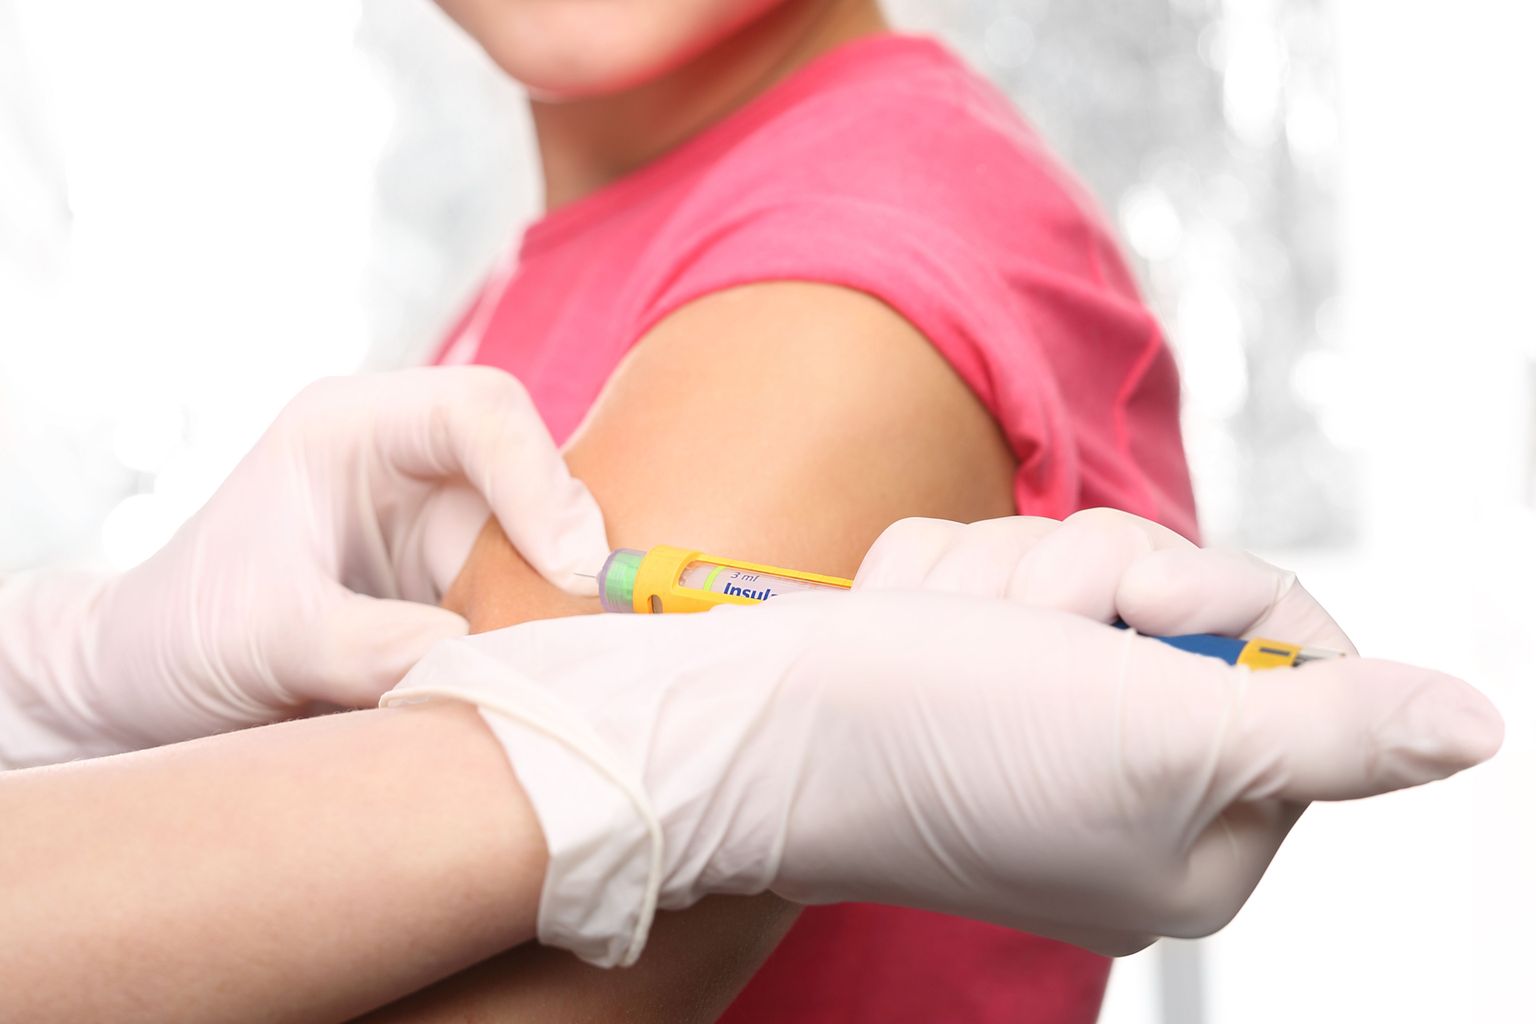 Vaktsiinidel, nagu ka teistel ravimitel,  võivad esineda kõrvalmõjud.